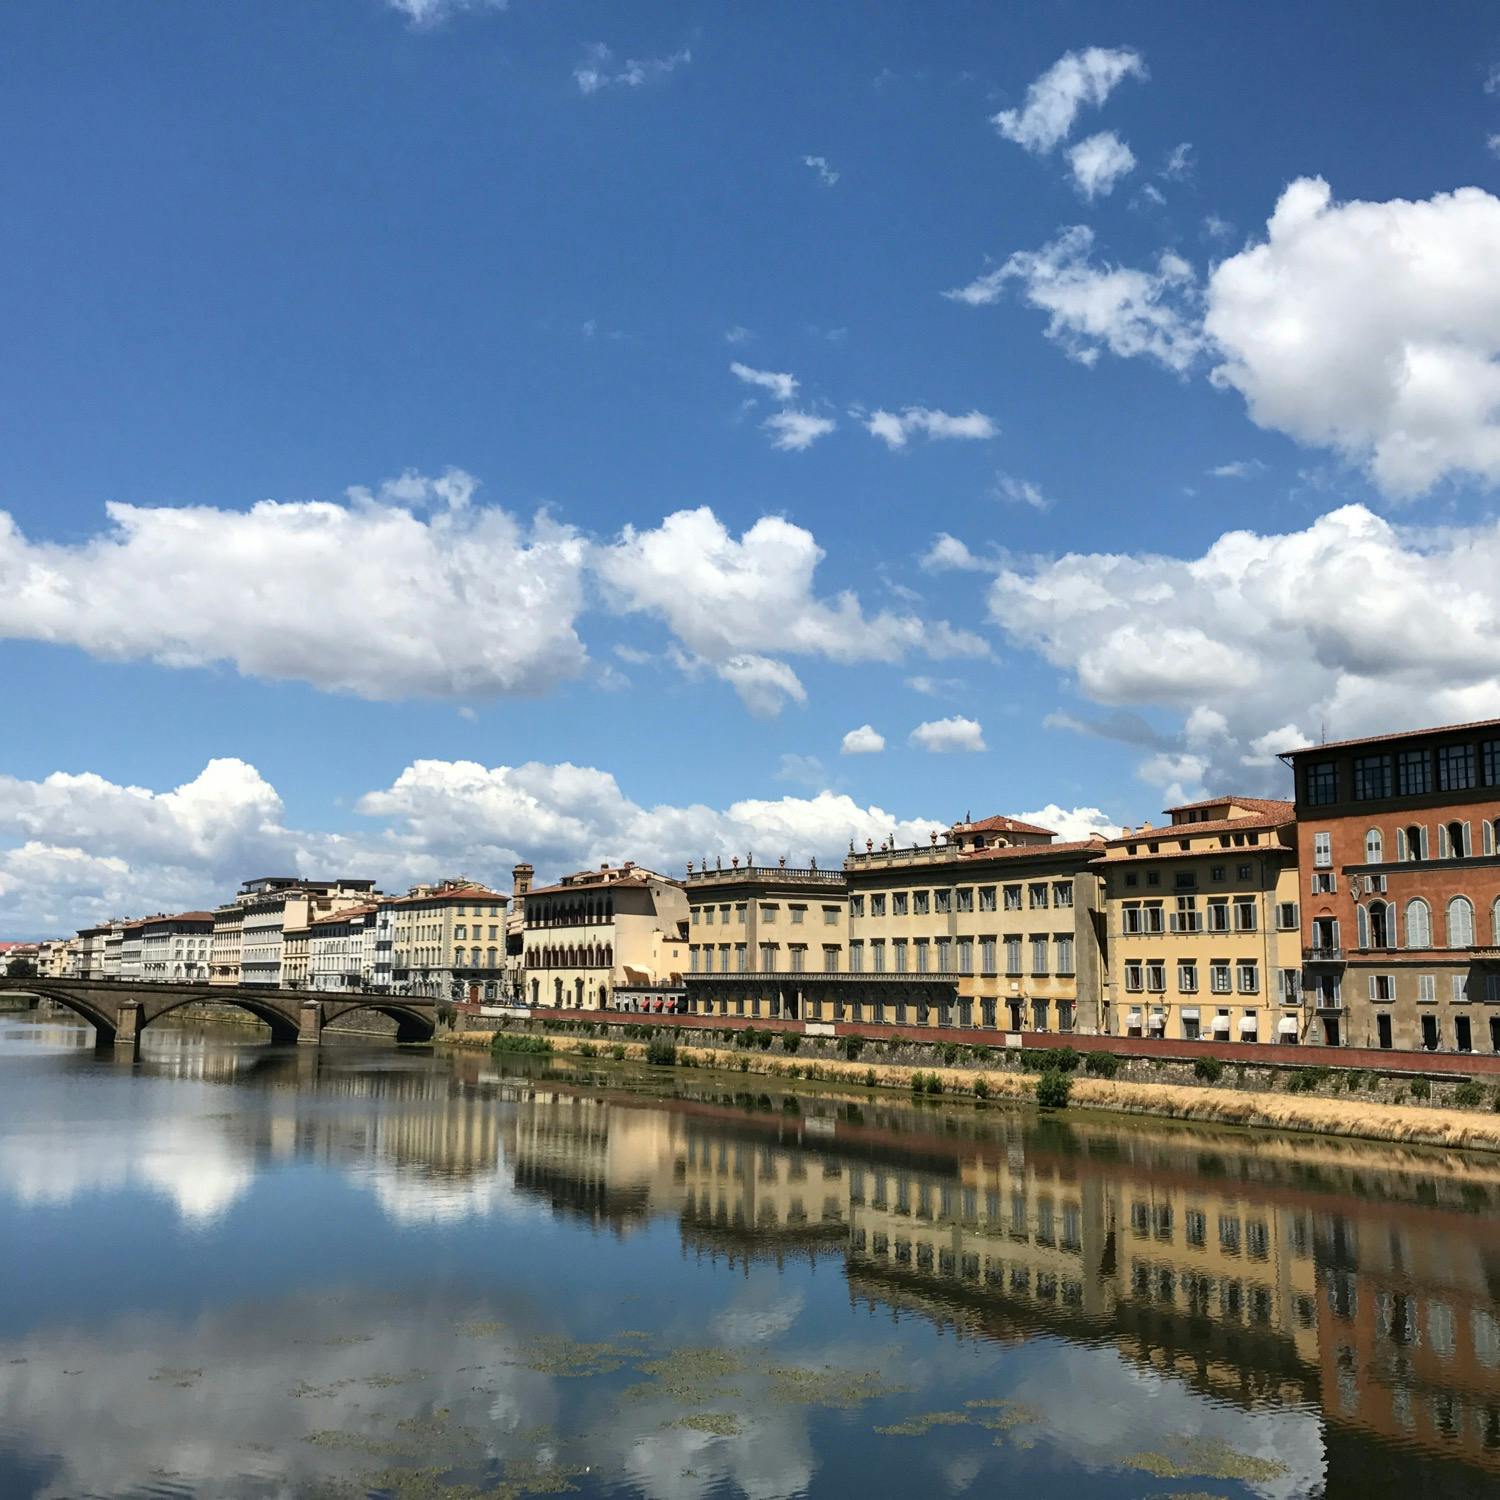 アルノ川 Arno の投稿写真 感想 みどころ フィレンツェのアルノ川は街も空も映し出す トリップノート